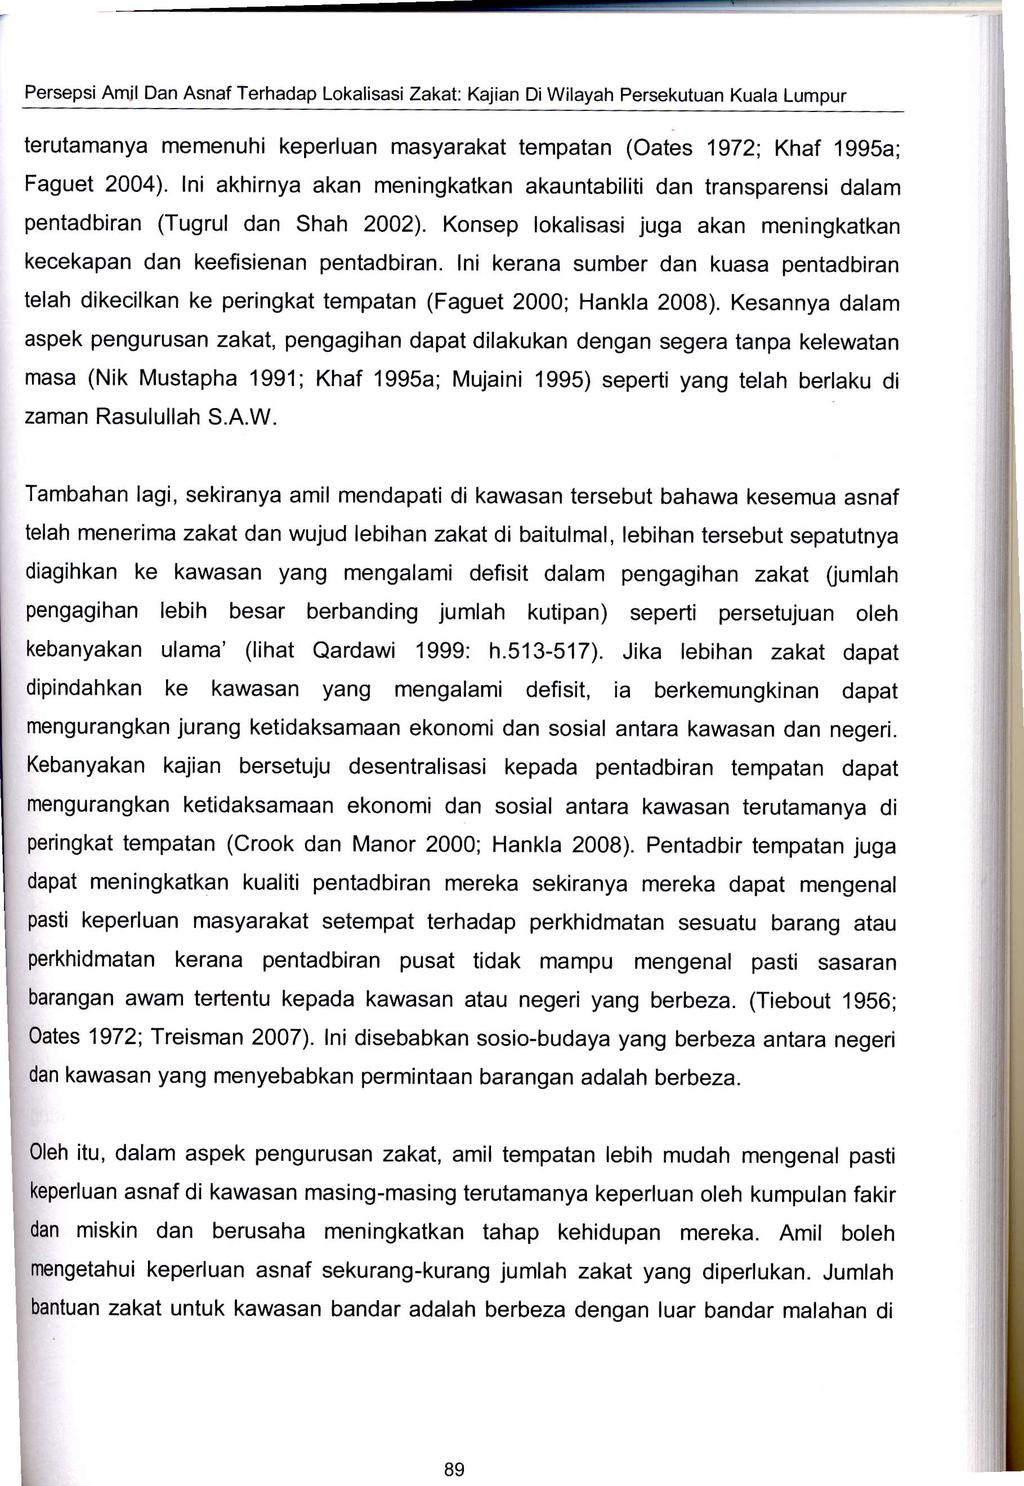 Persepsi Amil Dan Asnaf Terhadap Lokalisasi Zakat: Kajian Di Wilayah Persekutuan Kuala Lumpur terutamanya memenuhi keperluan masyarakat tempatan (oates 1972; Khaf 1995a; Faguet 2004).